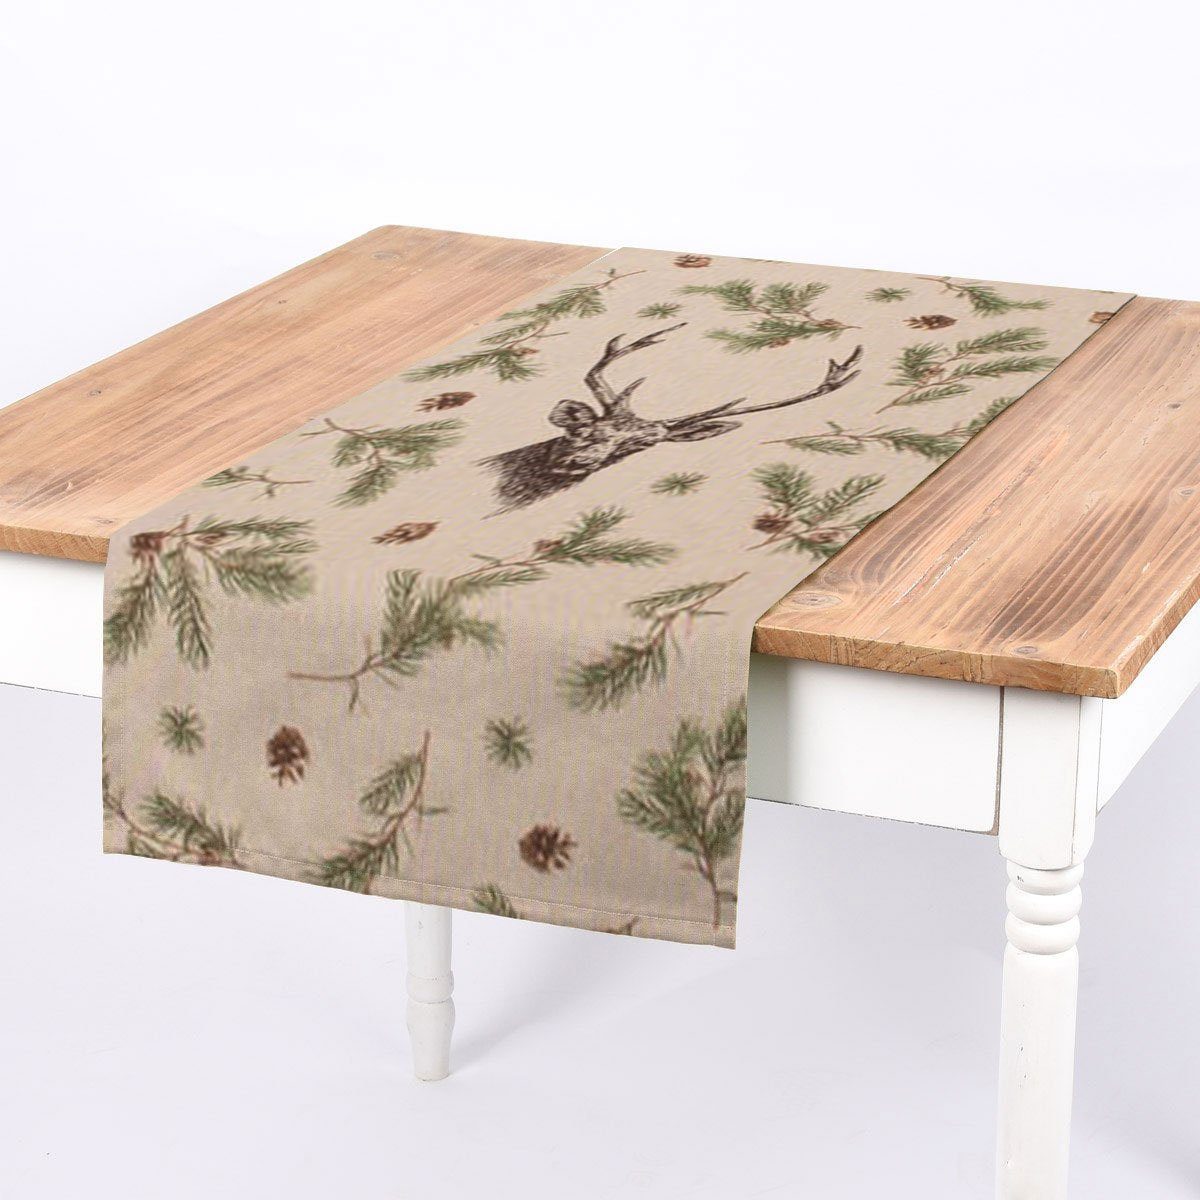 SCHÖNER LEBEN. Tischläufer SCHÖNER LEBEN. Tischläufer Deer Forest Hirsch Kiefernzweige natur gr, handmade